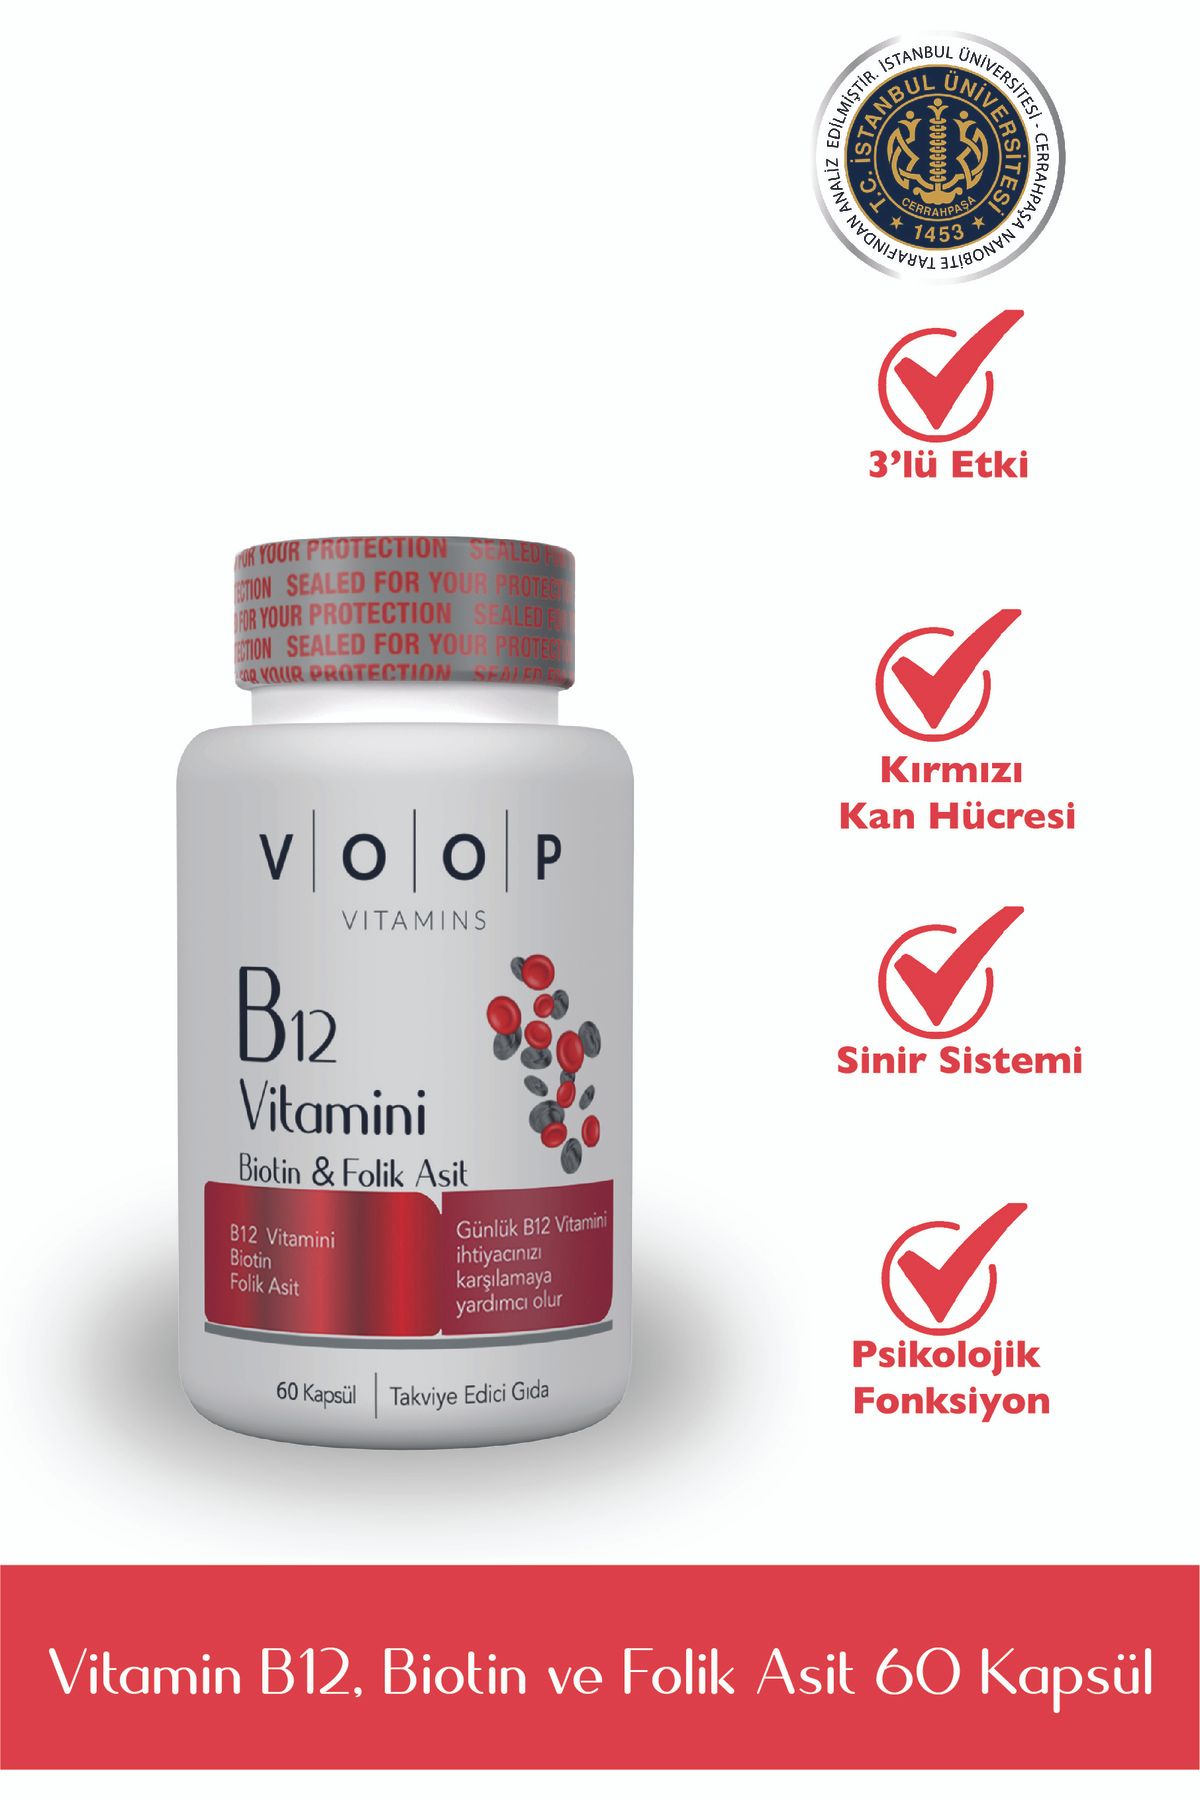 VOOP Vitamin B12, Biotin Ve Foik Asit Içeren Takviye Edici Gıda 60 Kapsül